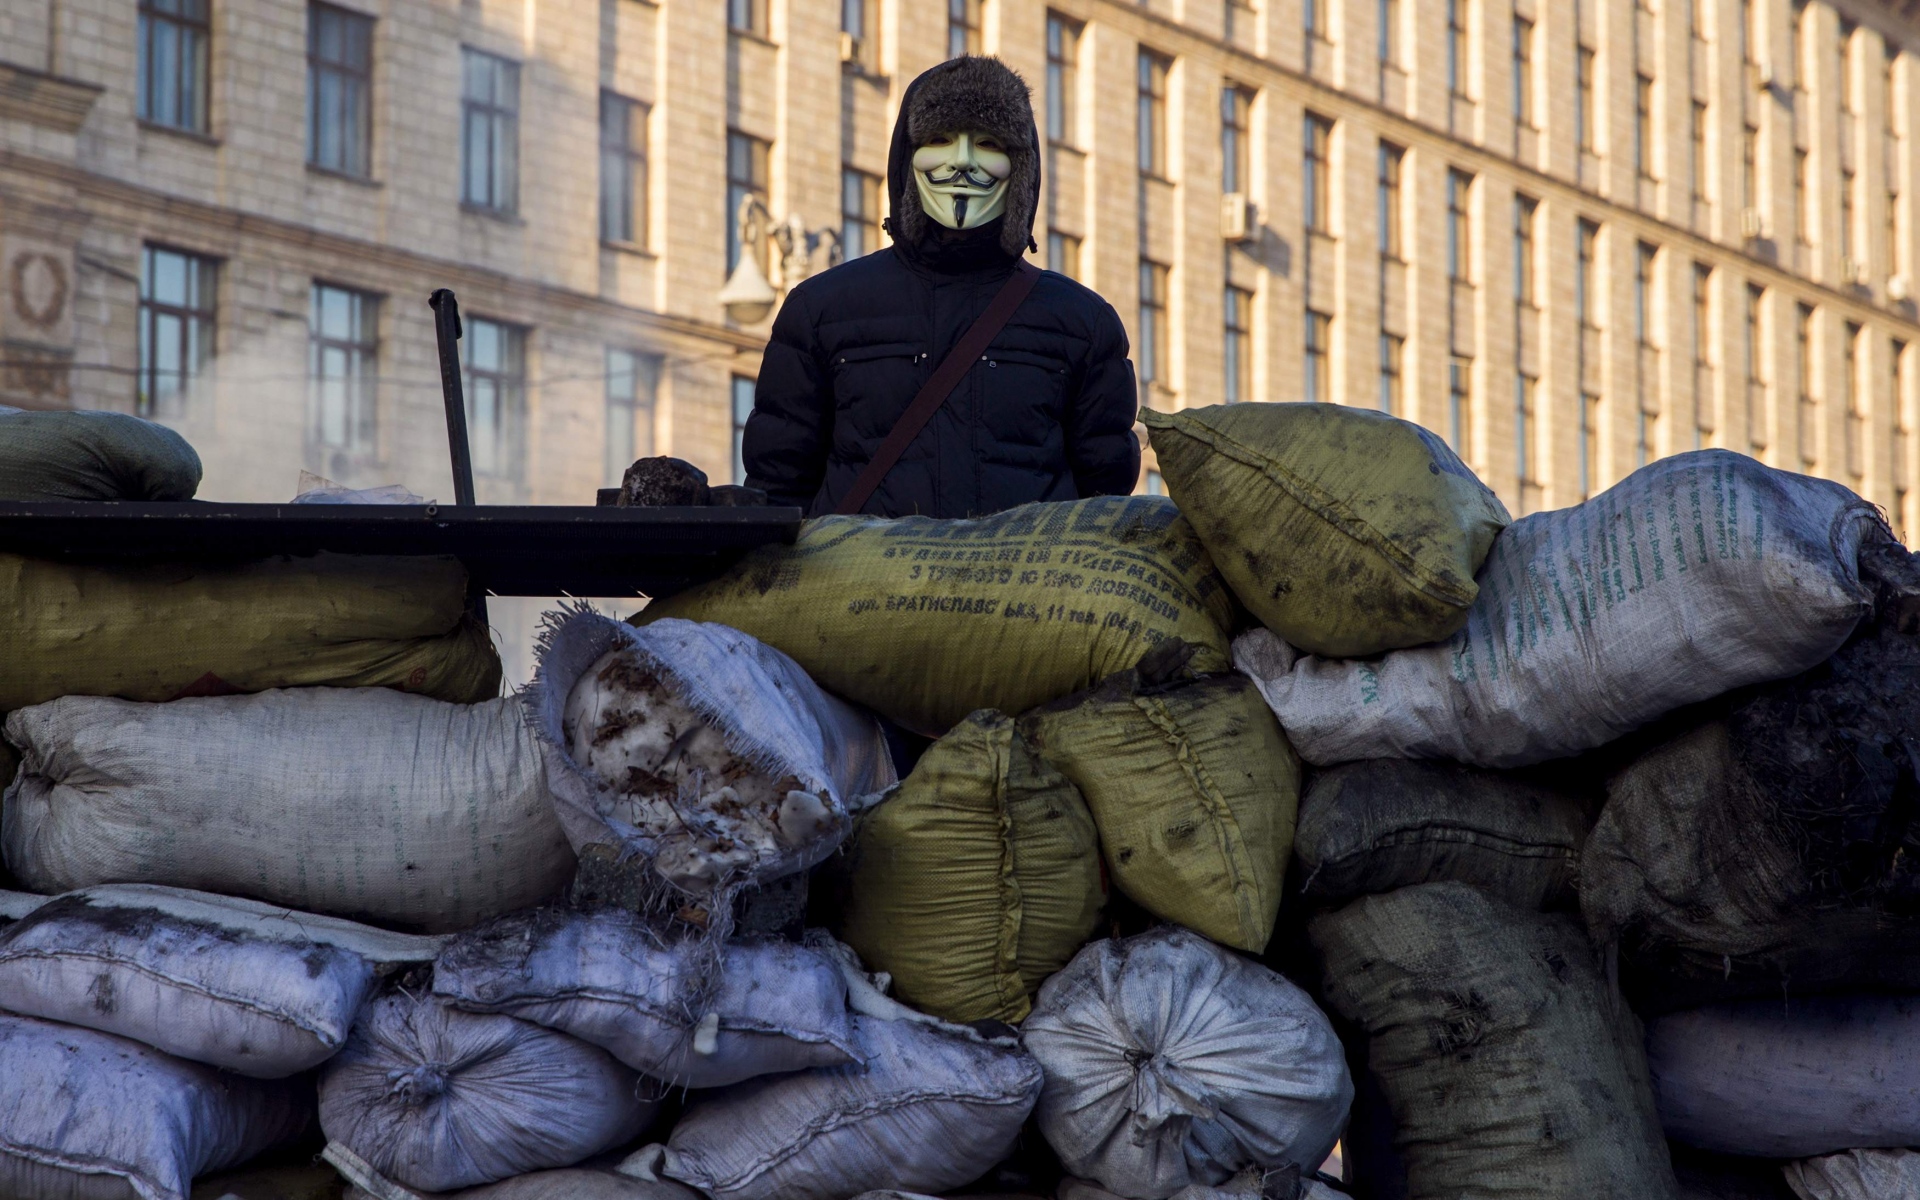 Картинки парень Фокс маски, маска анонимус, вендетта маски, маска v, арест,лондон, протестанты, 2014 фото и обои на рабочий стол